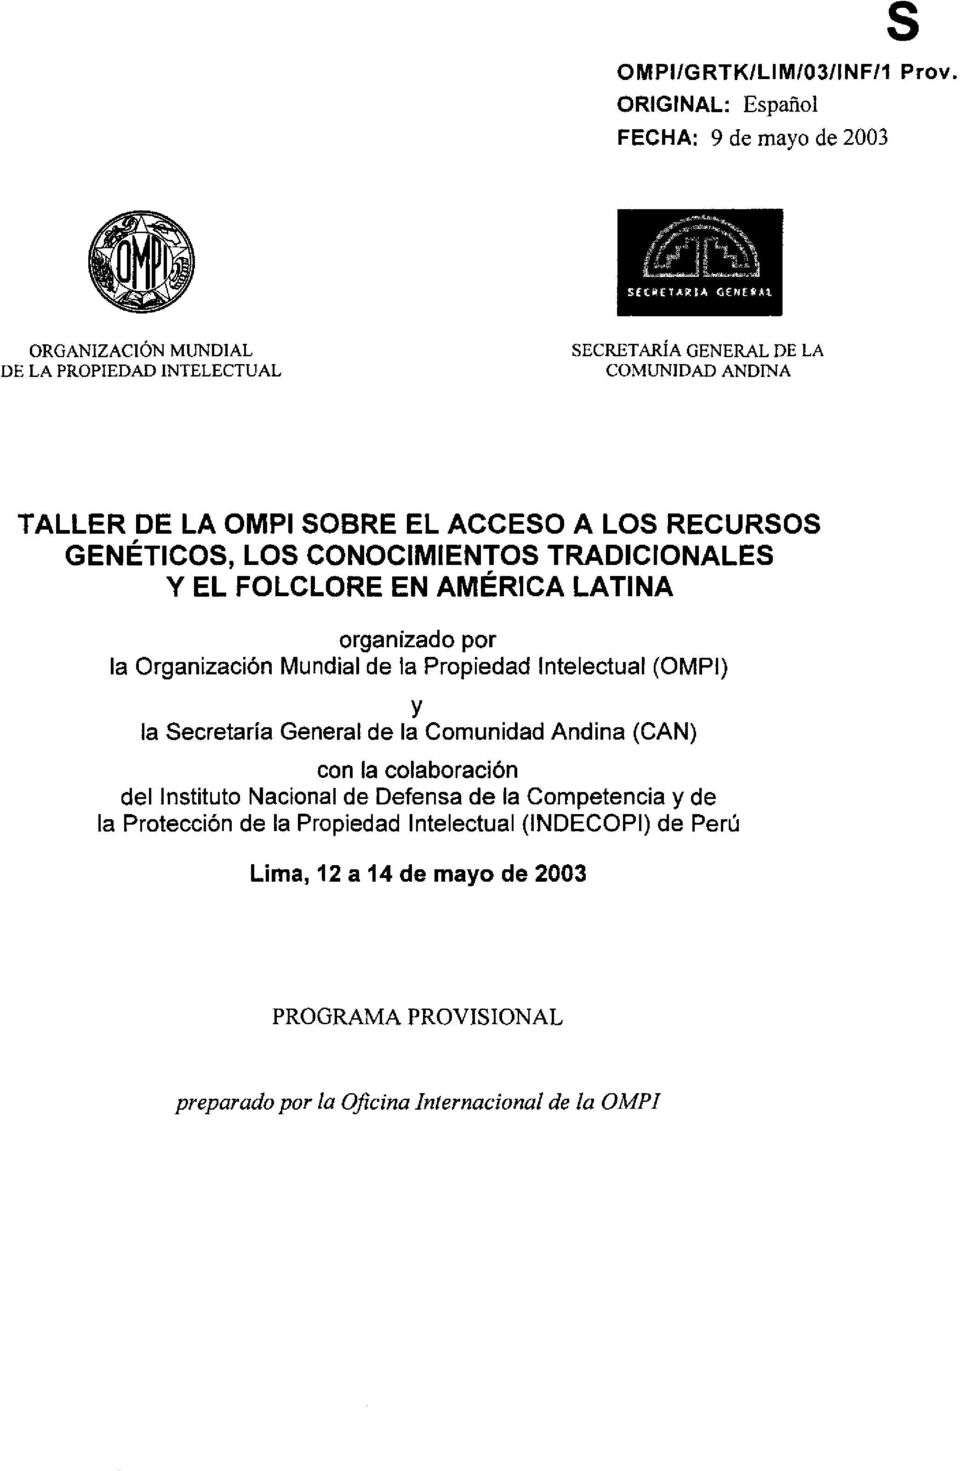 Mundial de la Propiedad Intelectual (OMPI) y la Secreta ria General de la Comunidad Andina (CAN) con la colaboraci6n del Instituto Nacional de Defensa de la